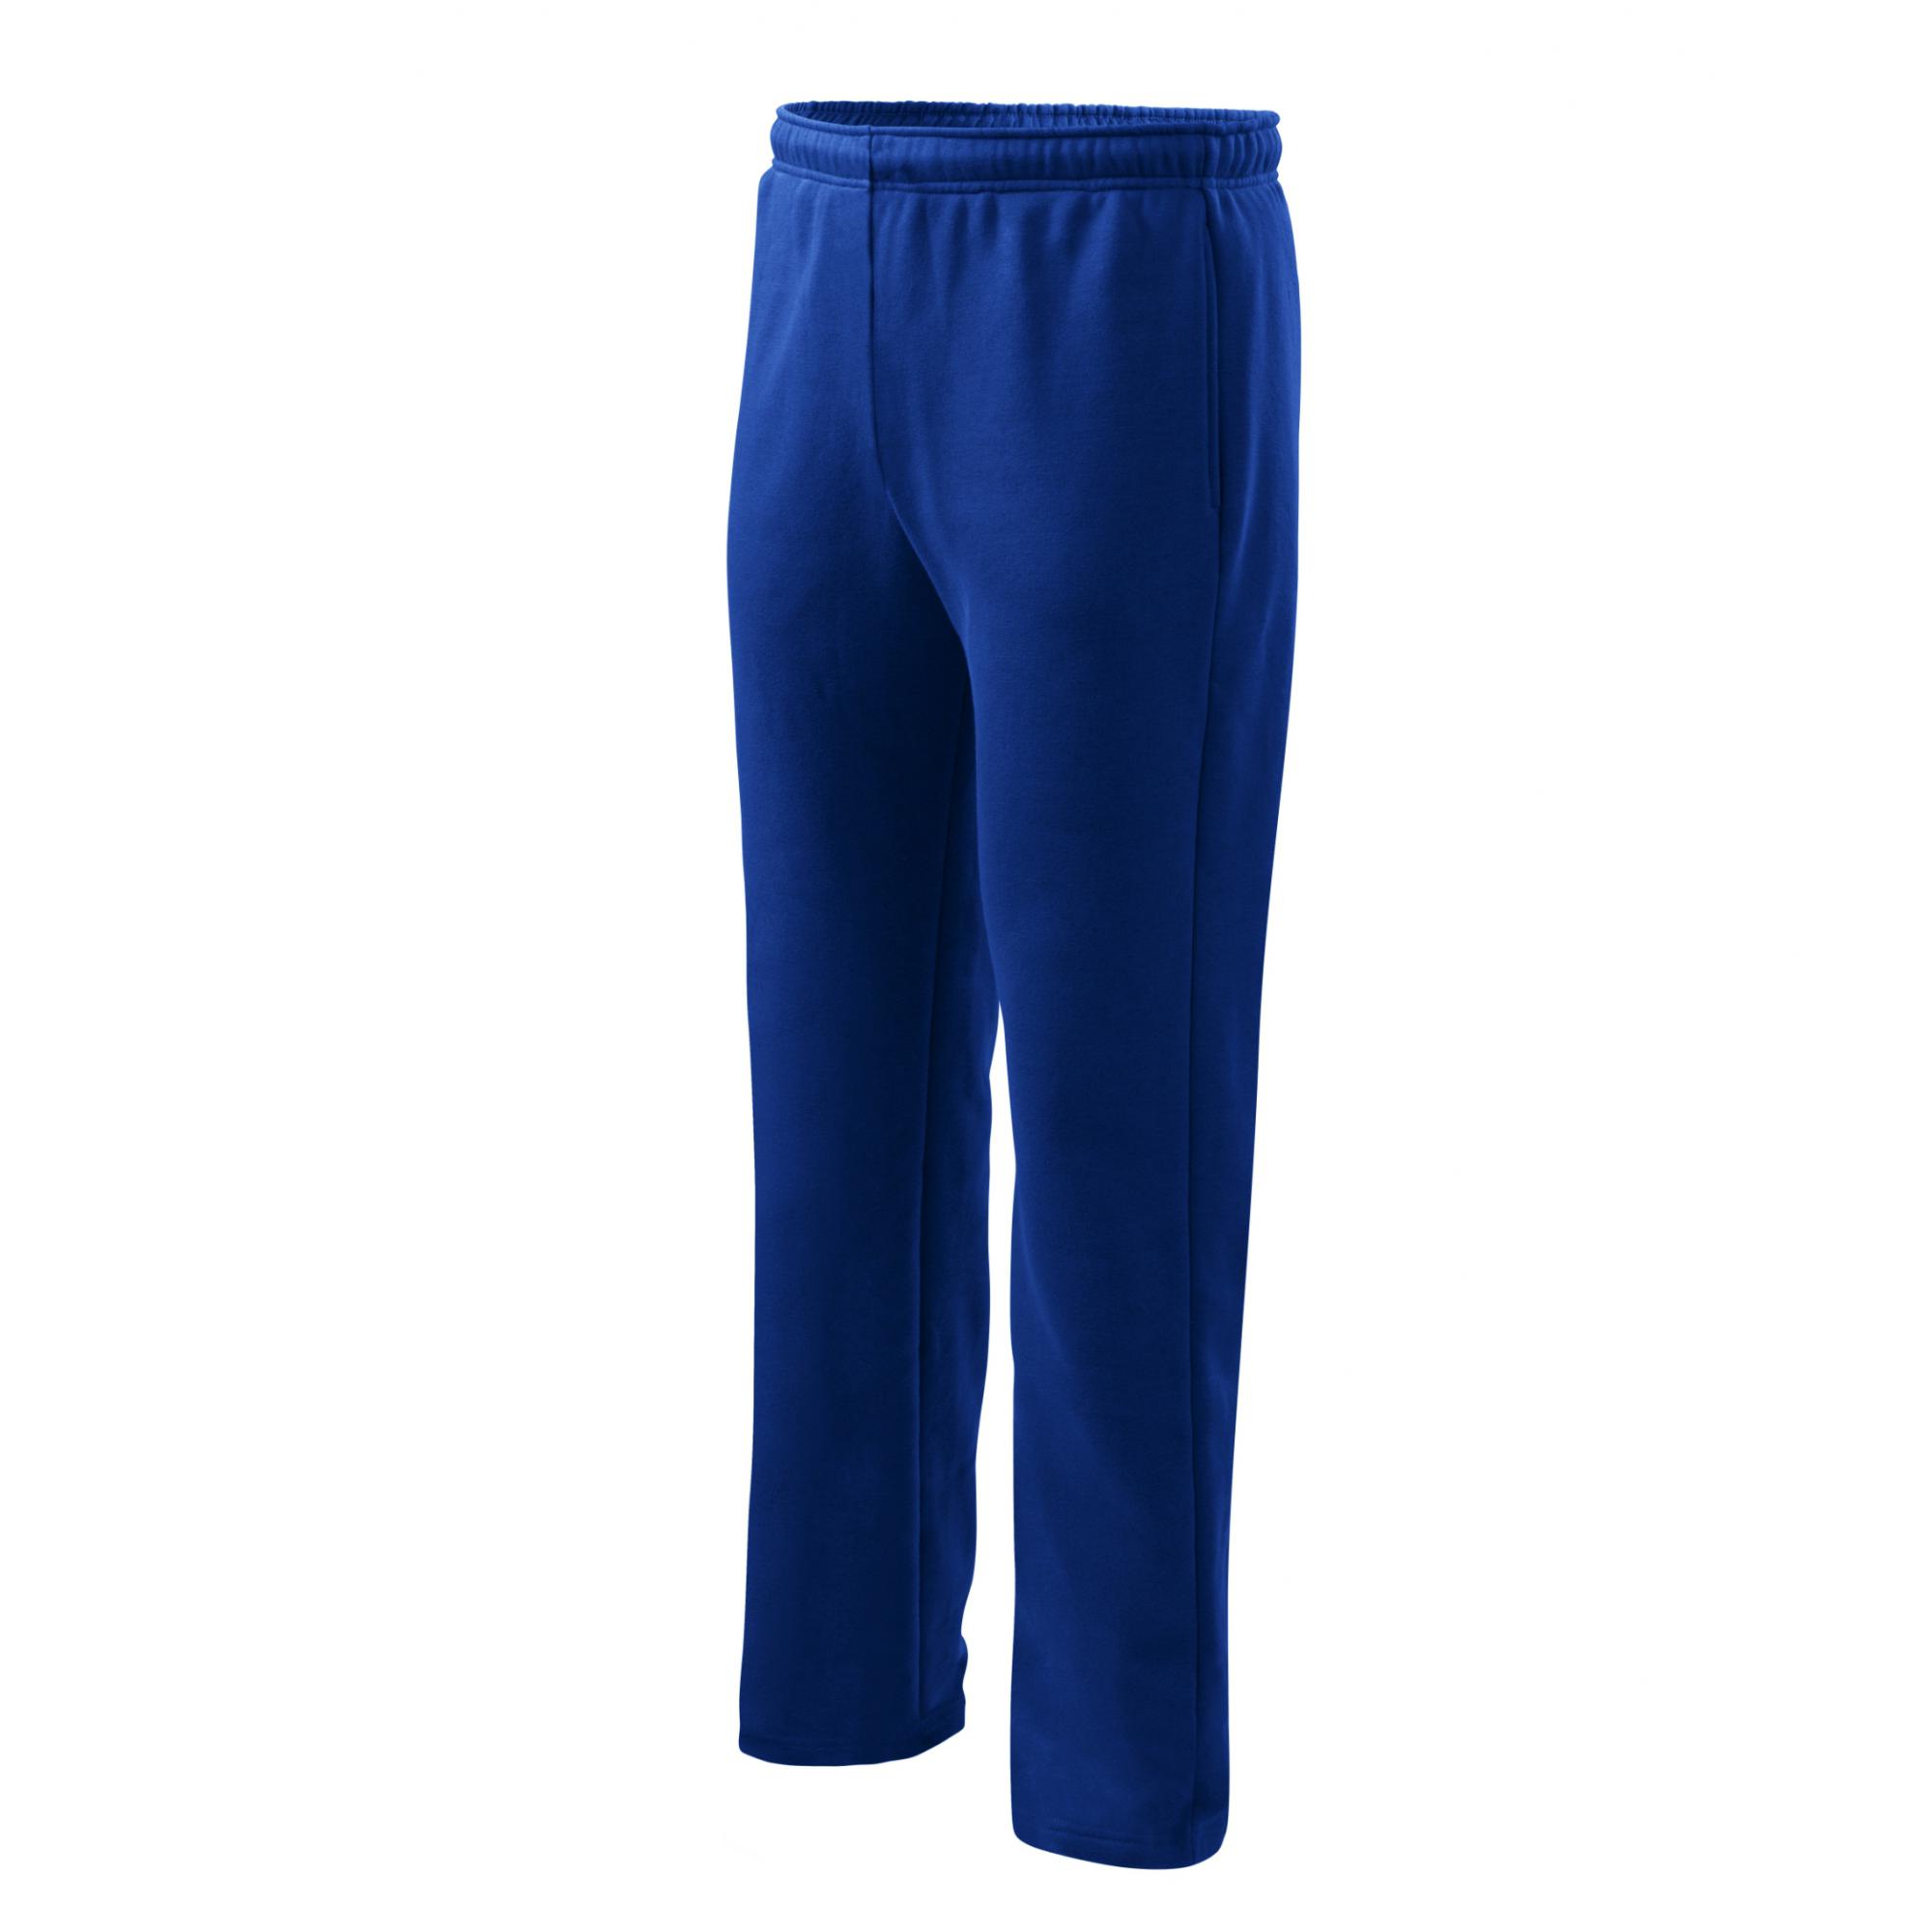 Pantaloni pentru bărbaţi/copii Comfort 607 Albastru regal 10ani